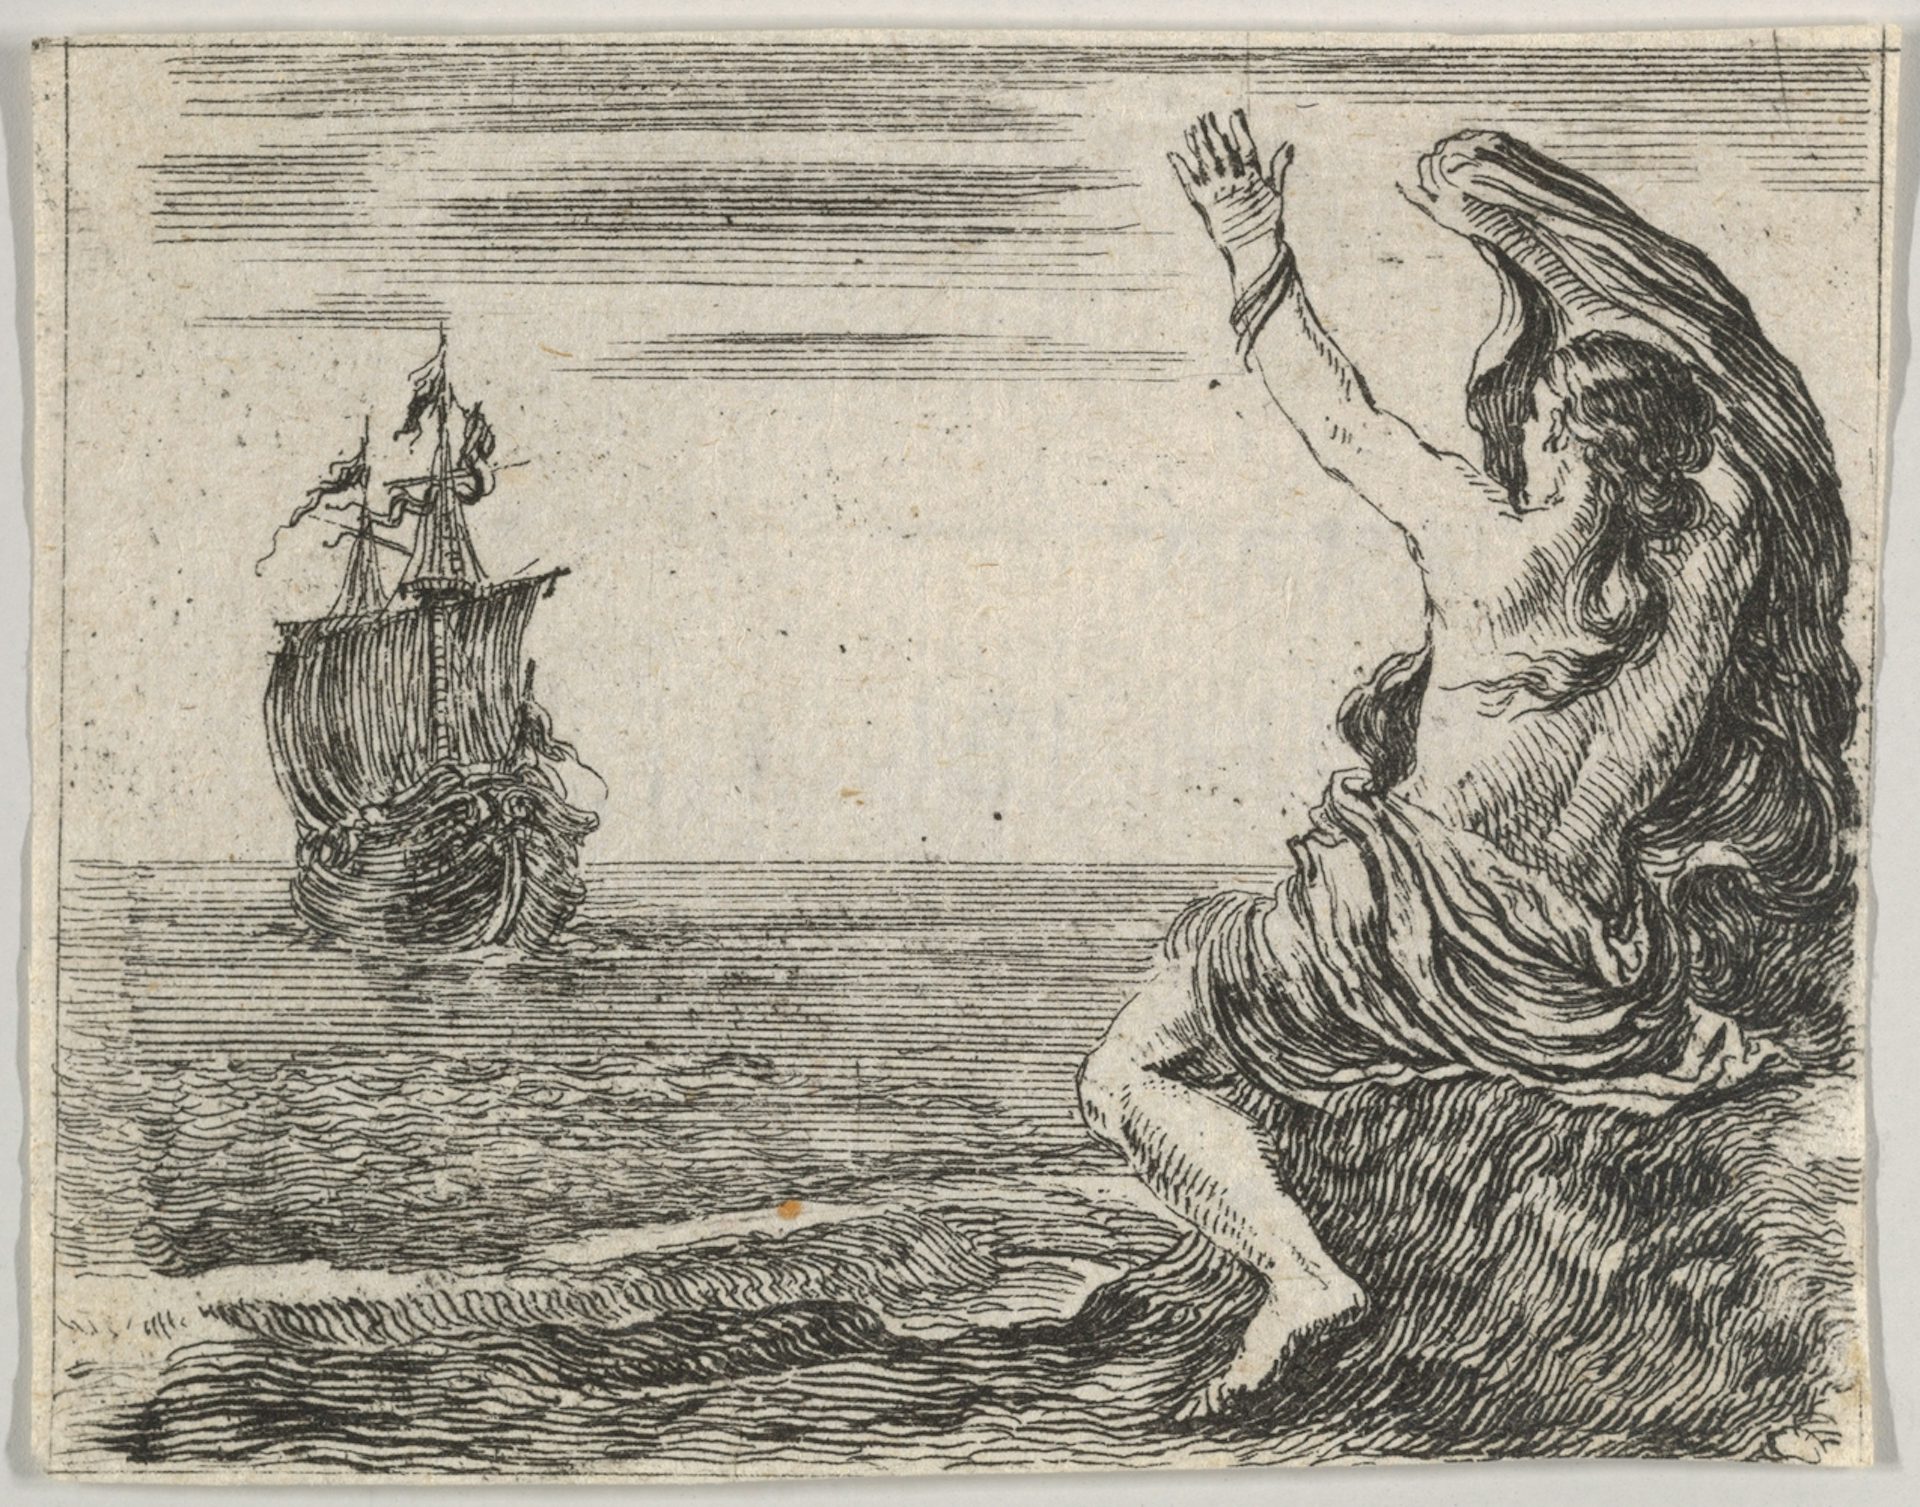 Illustration of Theseus and Ariadne by Stefano della Bella